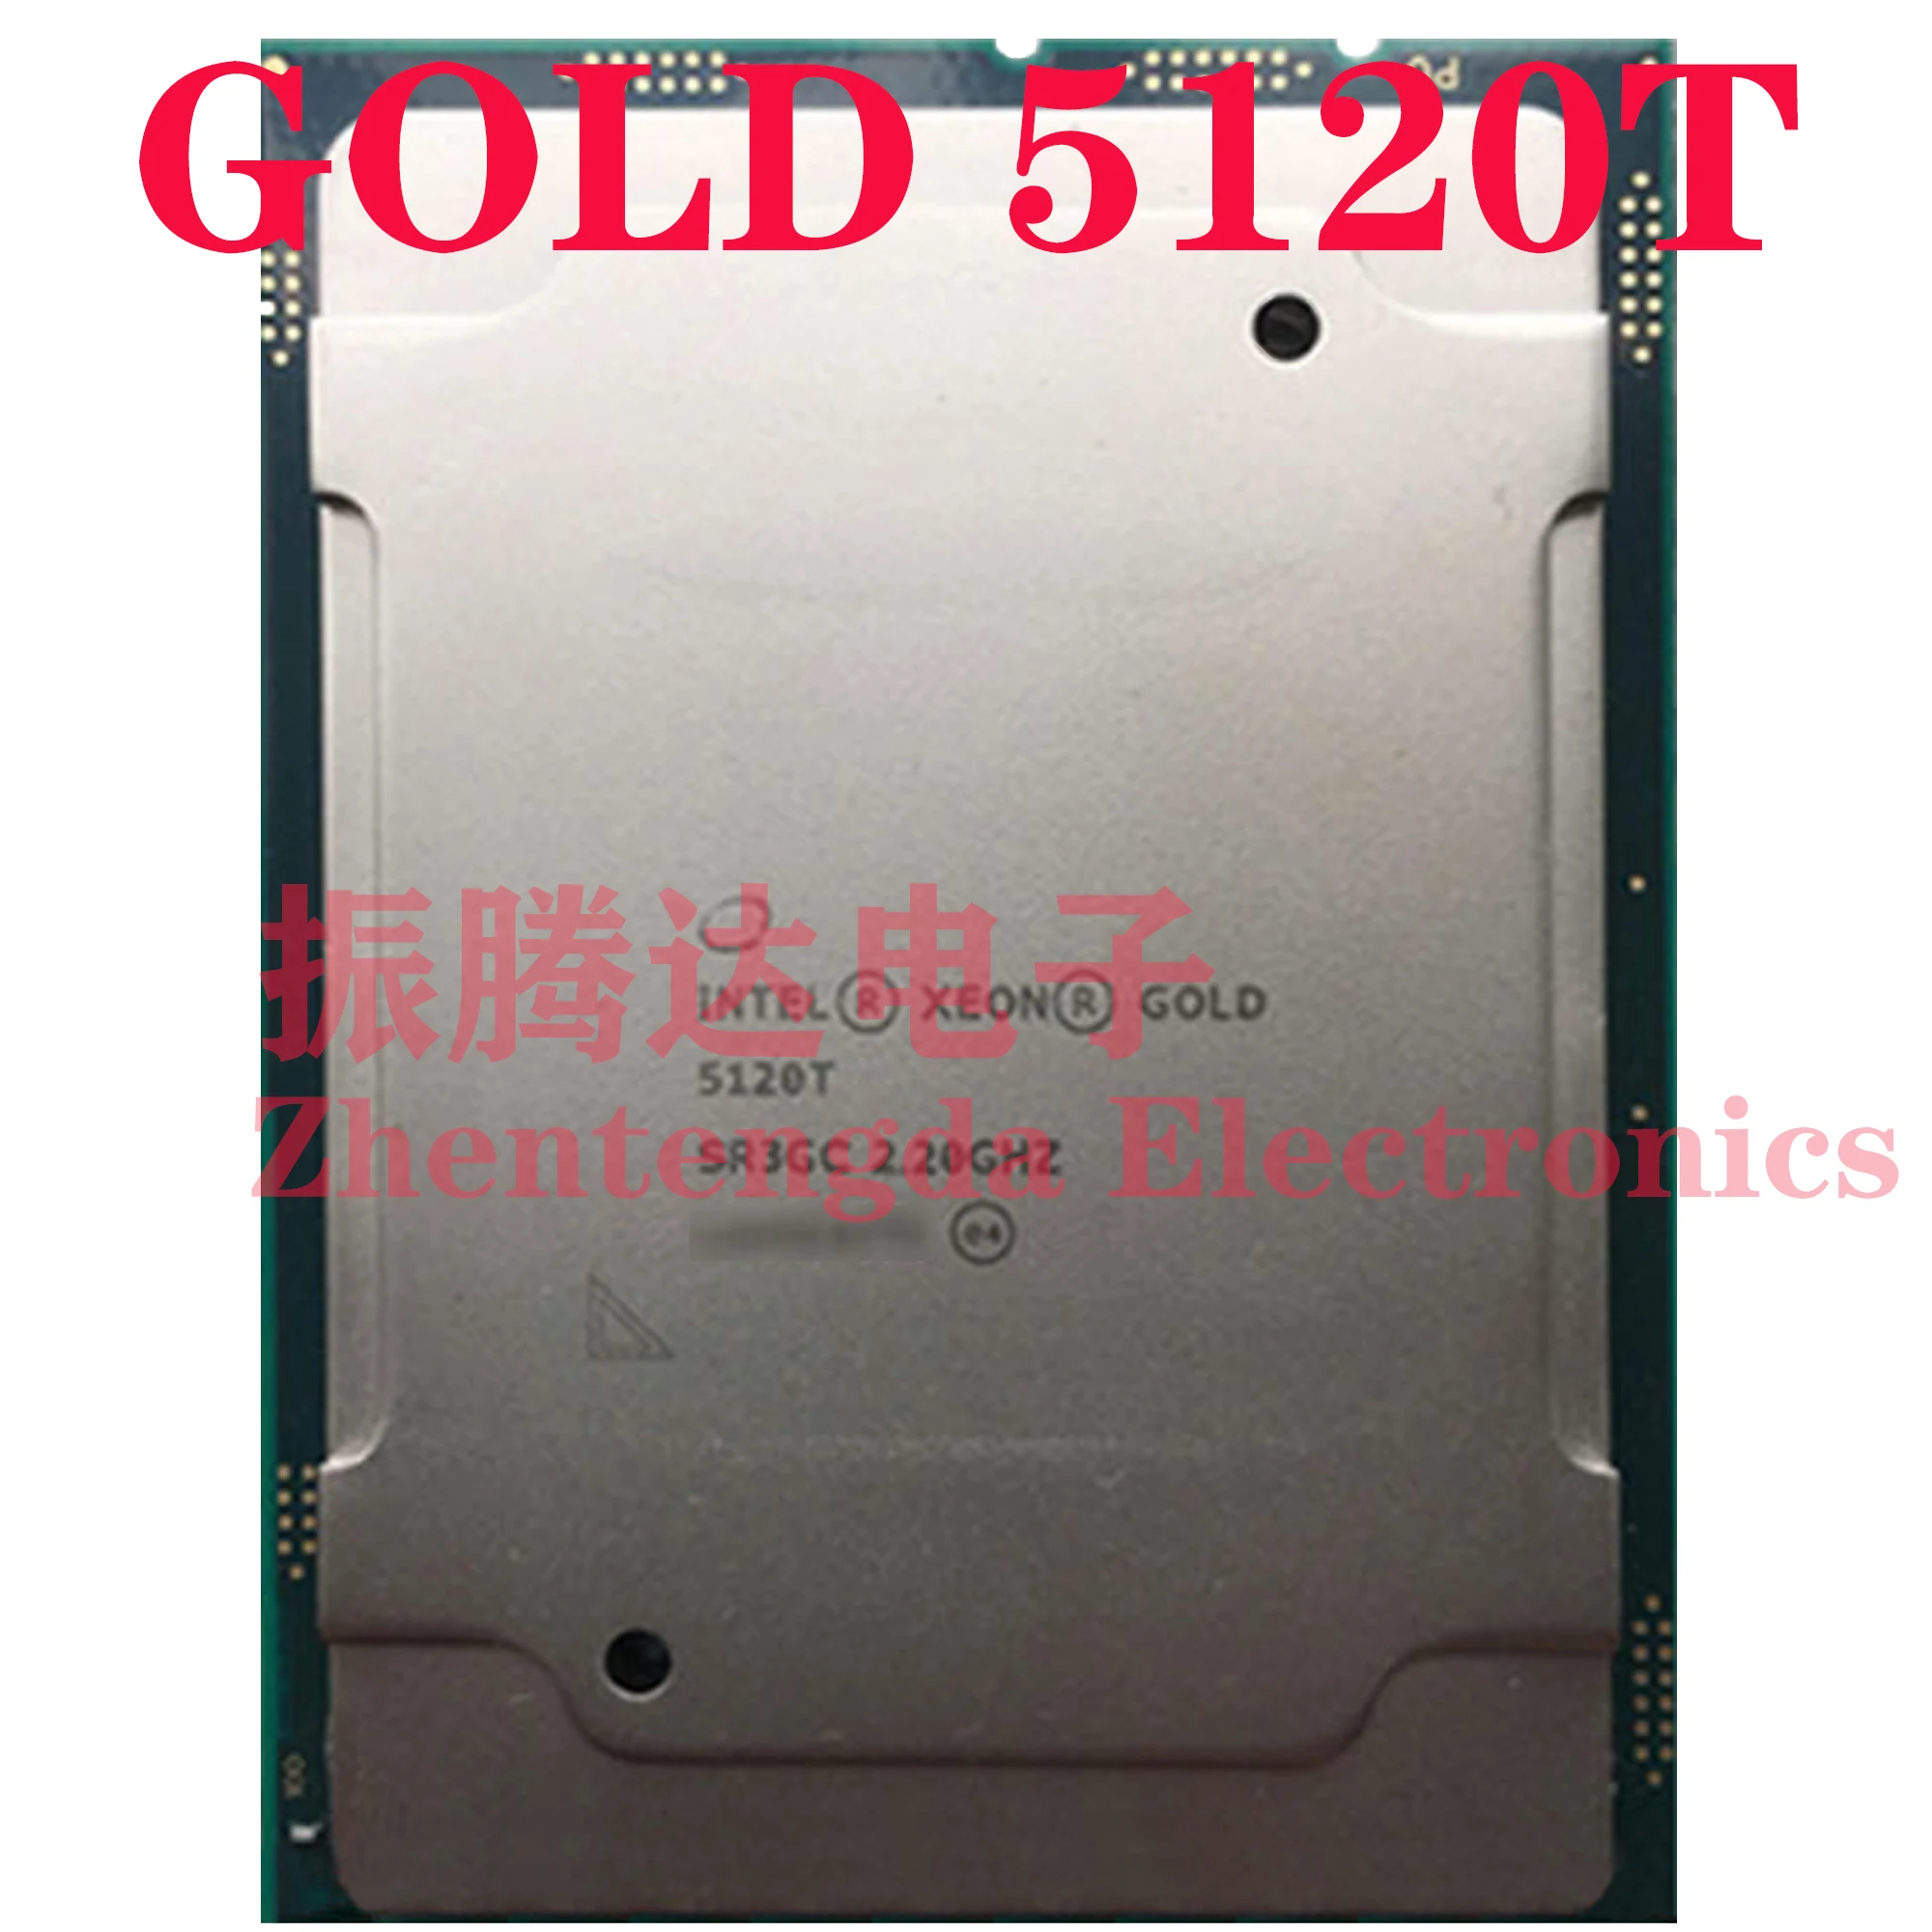 

Intel Xeon Gold 5120T CPU 2.2GHz L3-19.25MB 14 Core 28 Threads LGA-3647 Gold 5120T CPU Processor